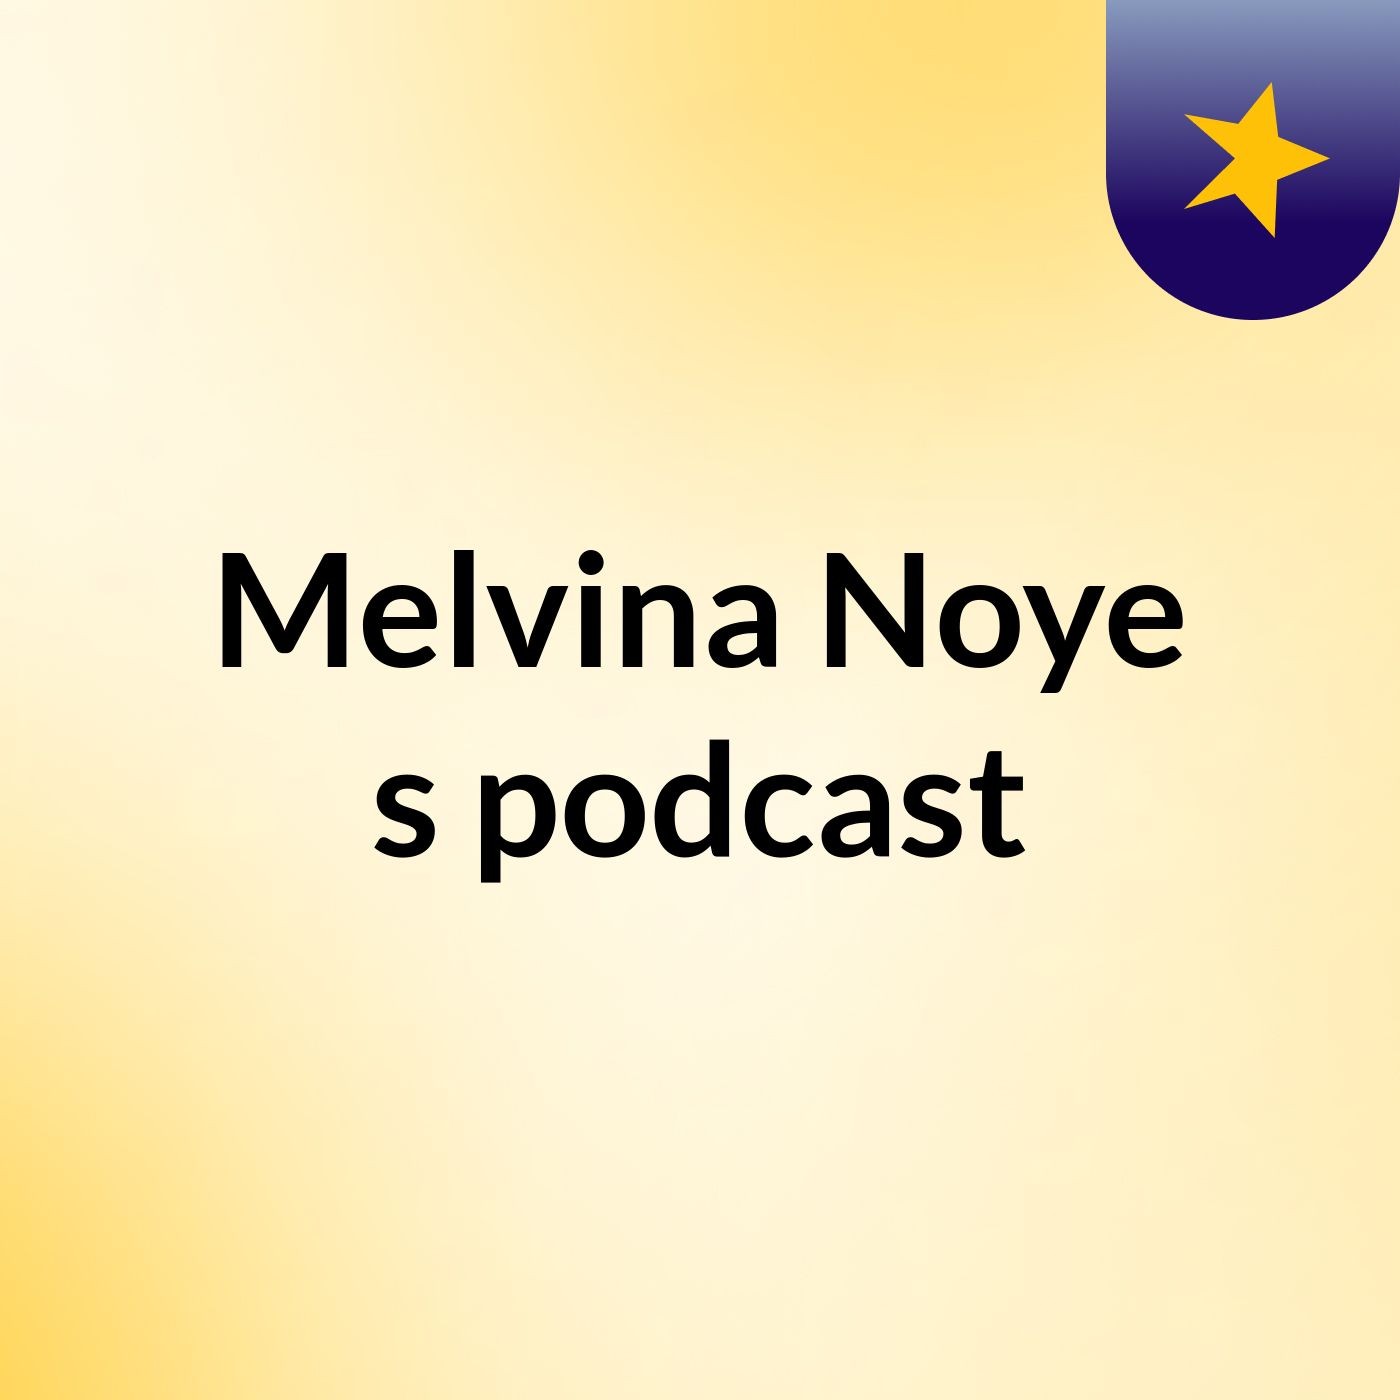 Melvina Noye's podcast